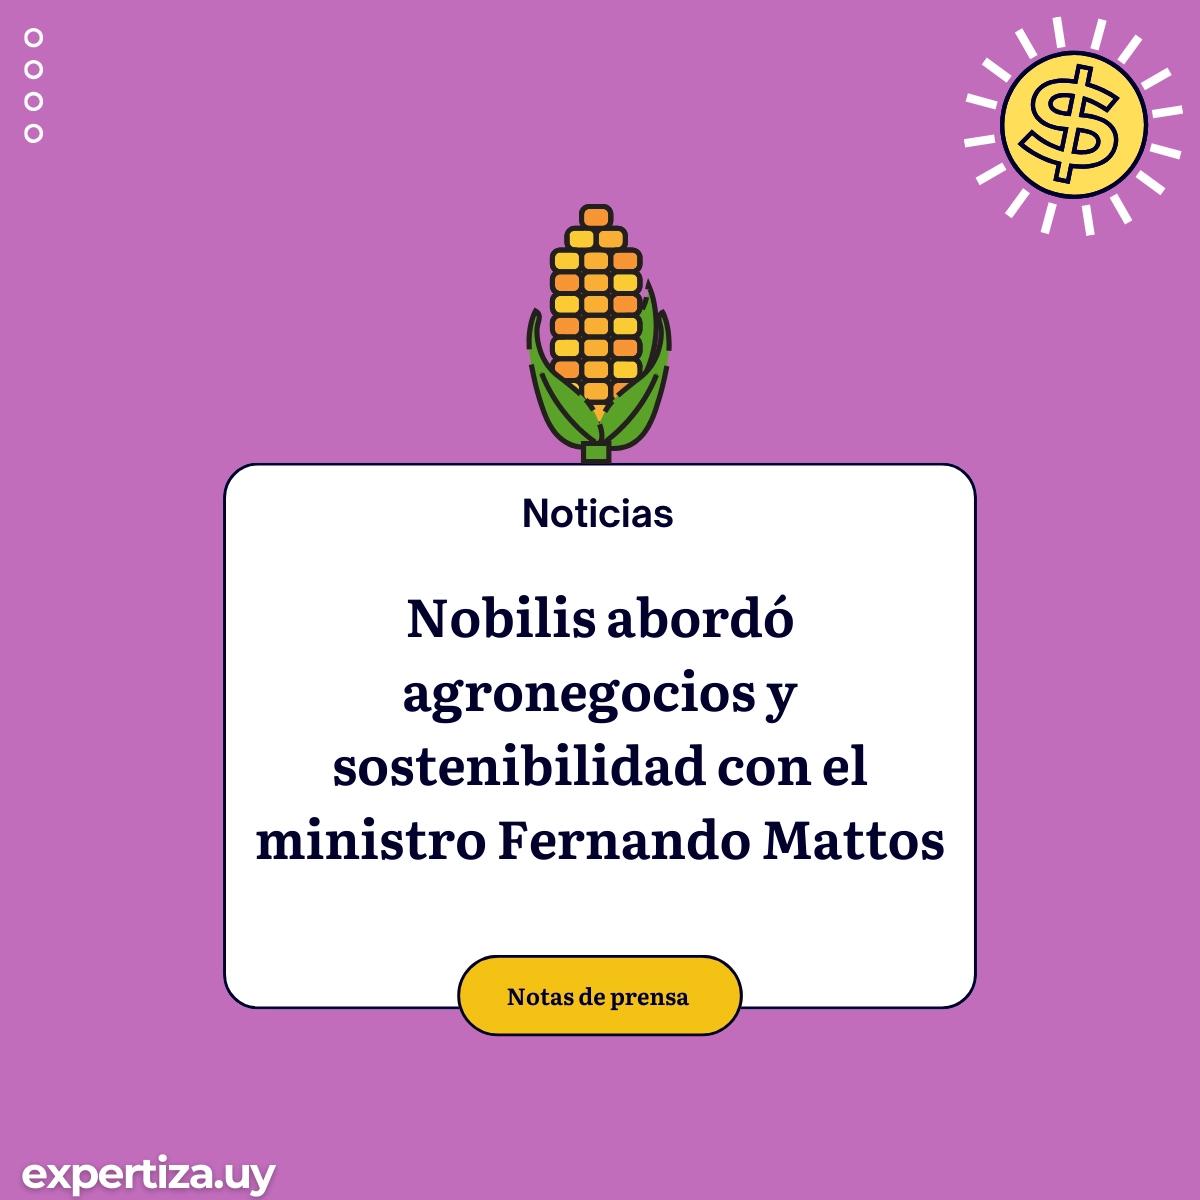 Nobilis abordó agronegocios y sostenibilidad con el ministro Fernando Mattos.